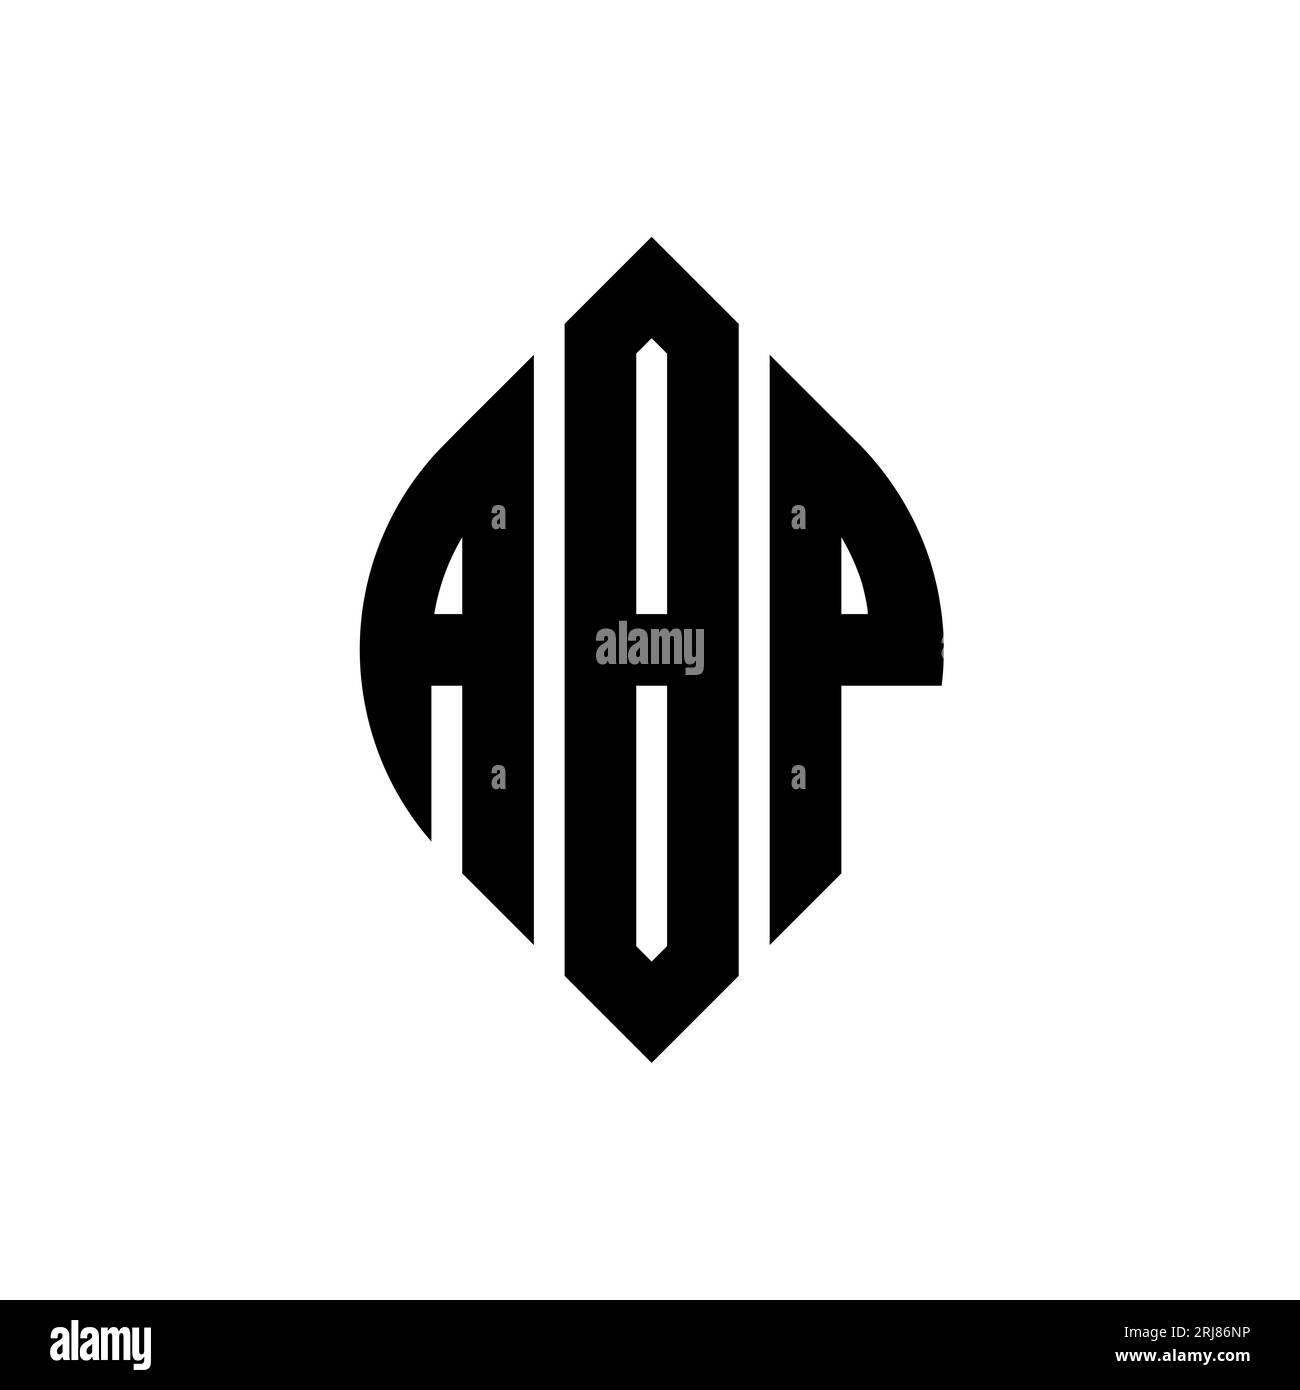 ABP Publishing - Brand identity